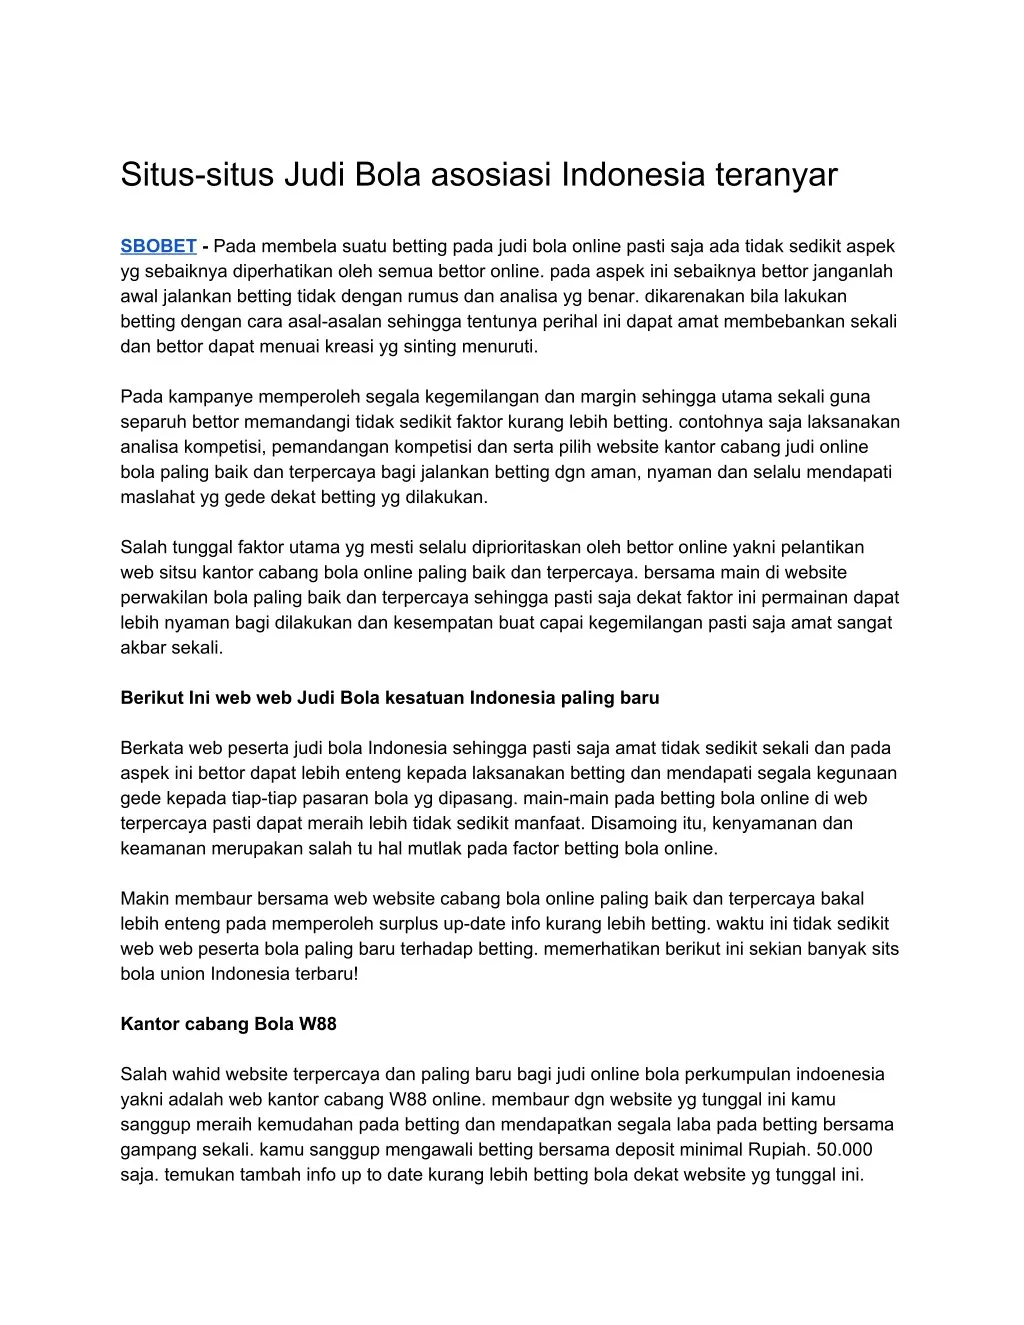 situs situs judi bola asosiasi indonesia teranyar n.